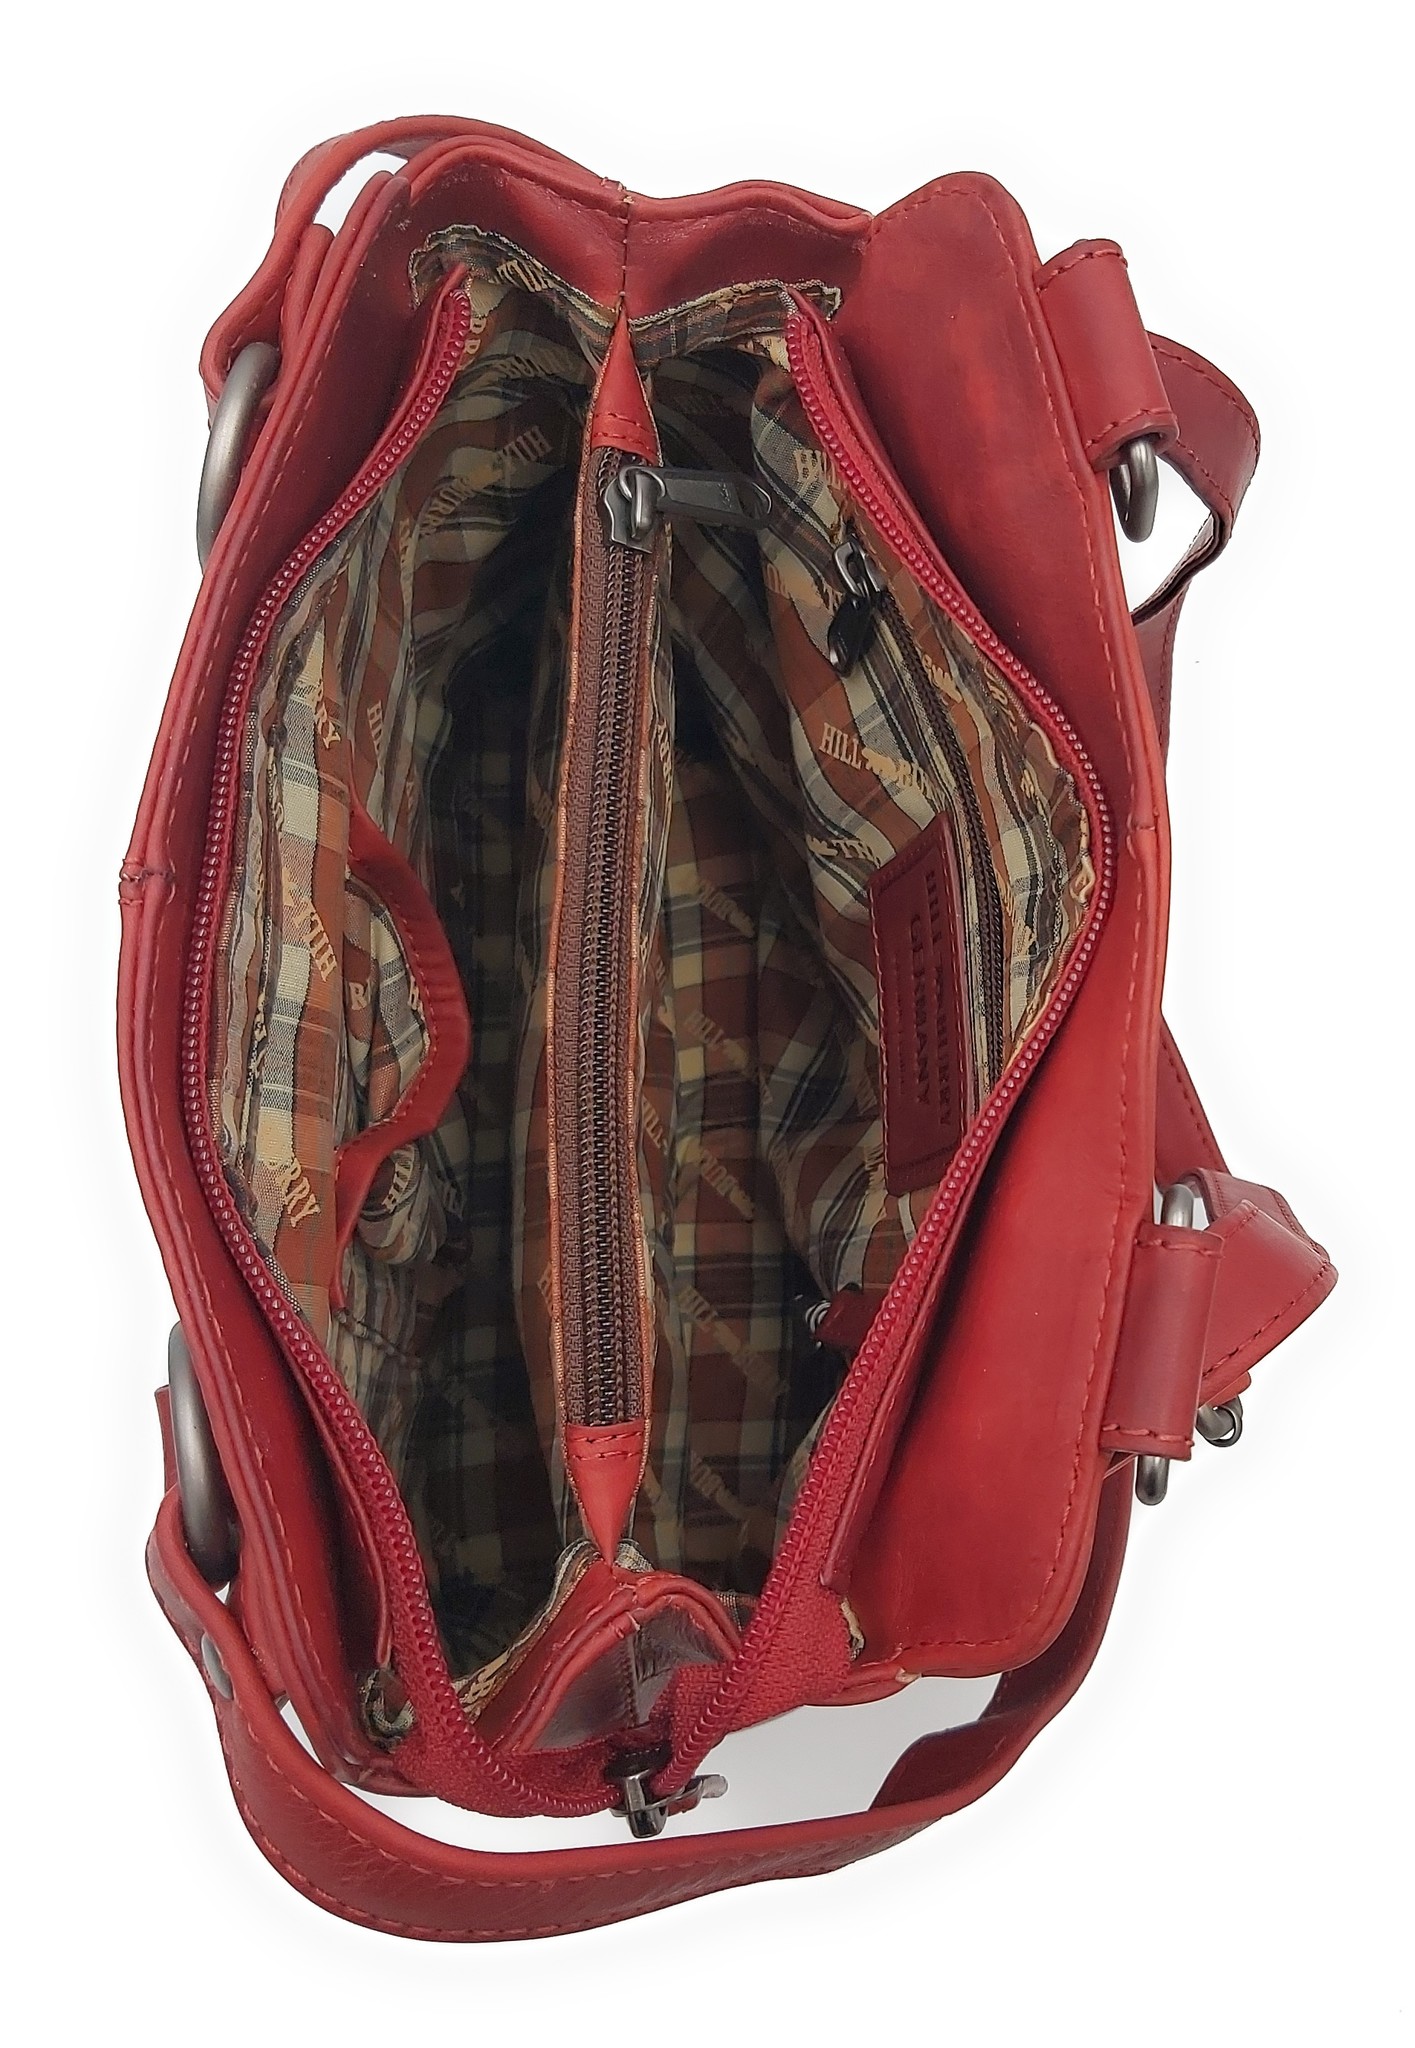 Hill Burry - VB100208 - 4065 - Echtes Leder - Damen Rucksack und Umhängetasche - Robust - Schick - Aussehen - Vintage Leder - Rot